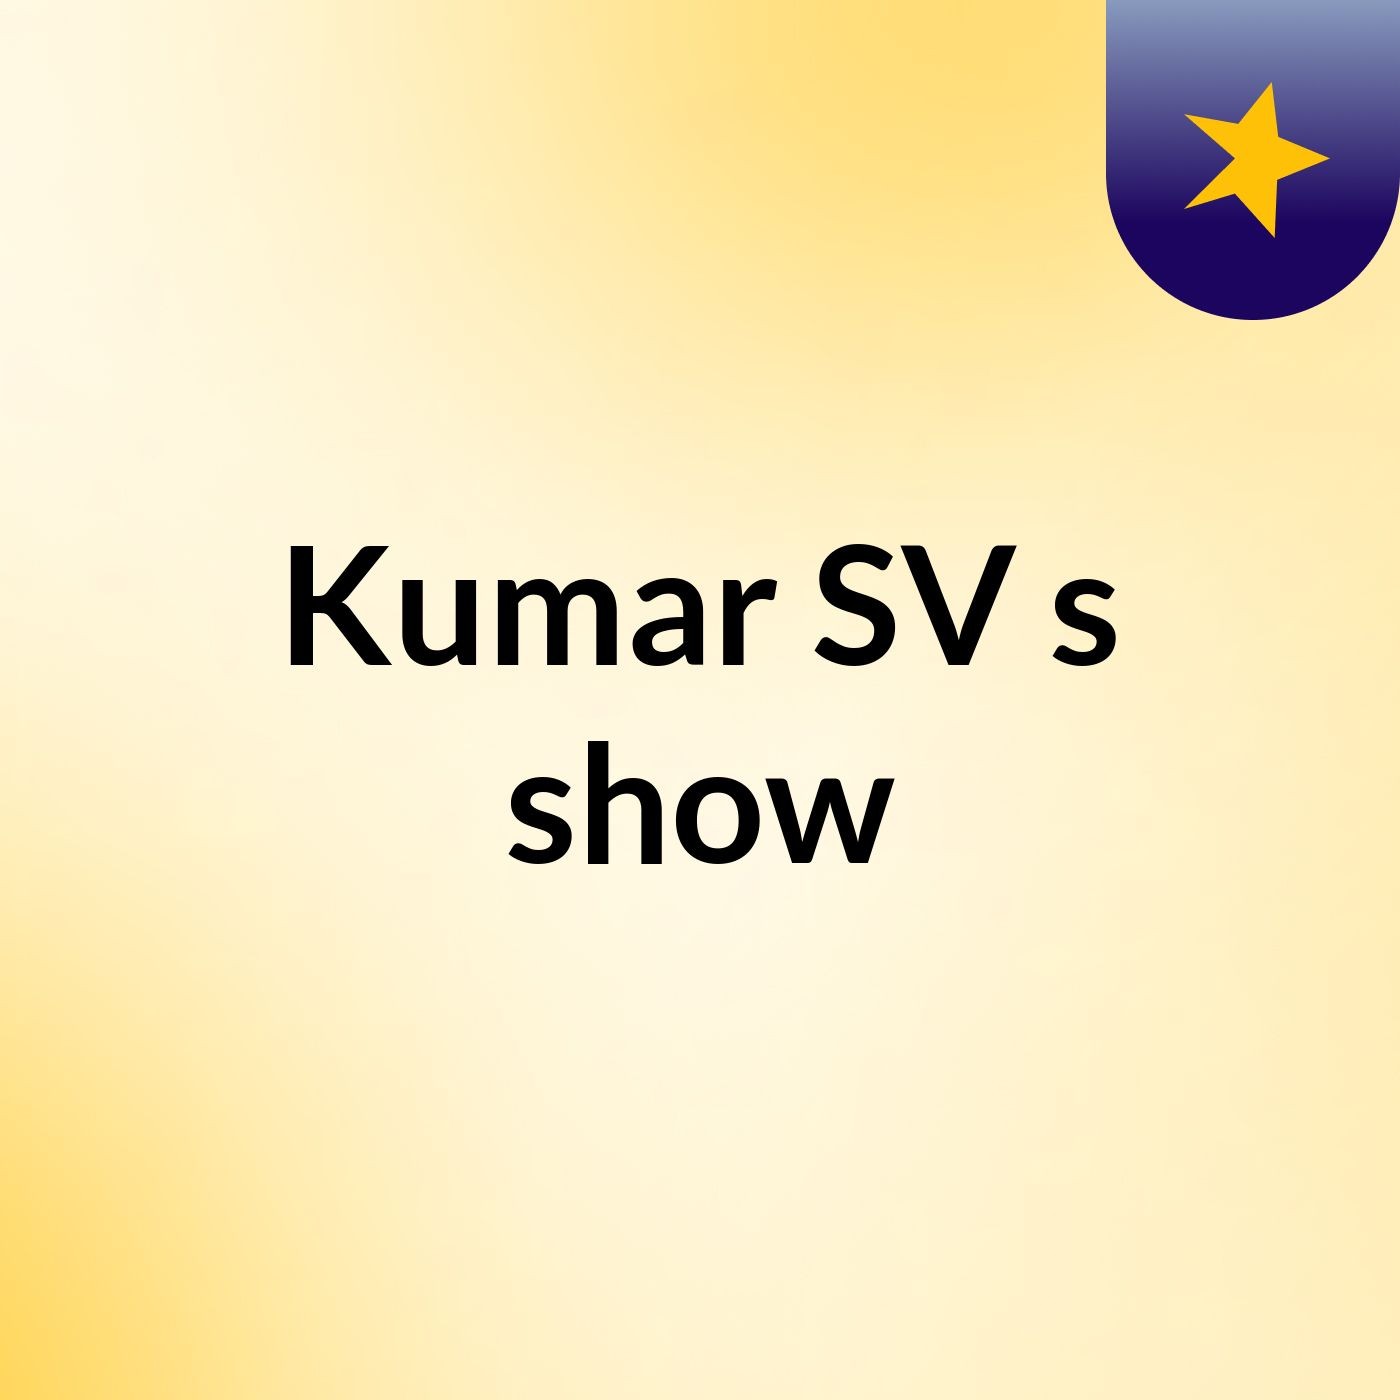 Kumar SV's show